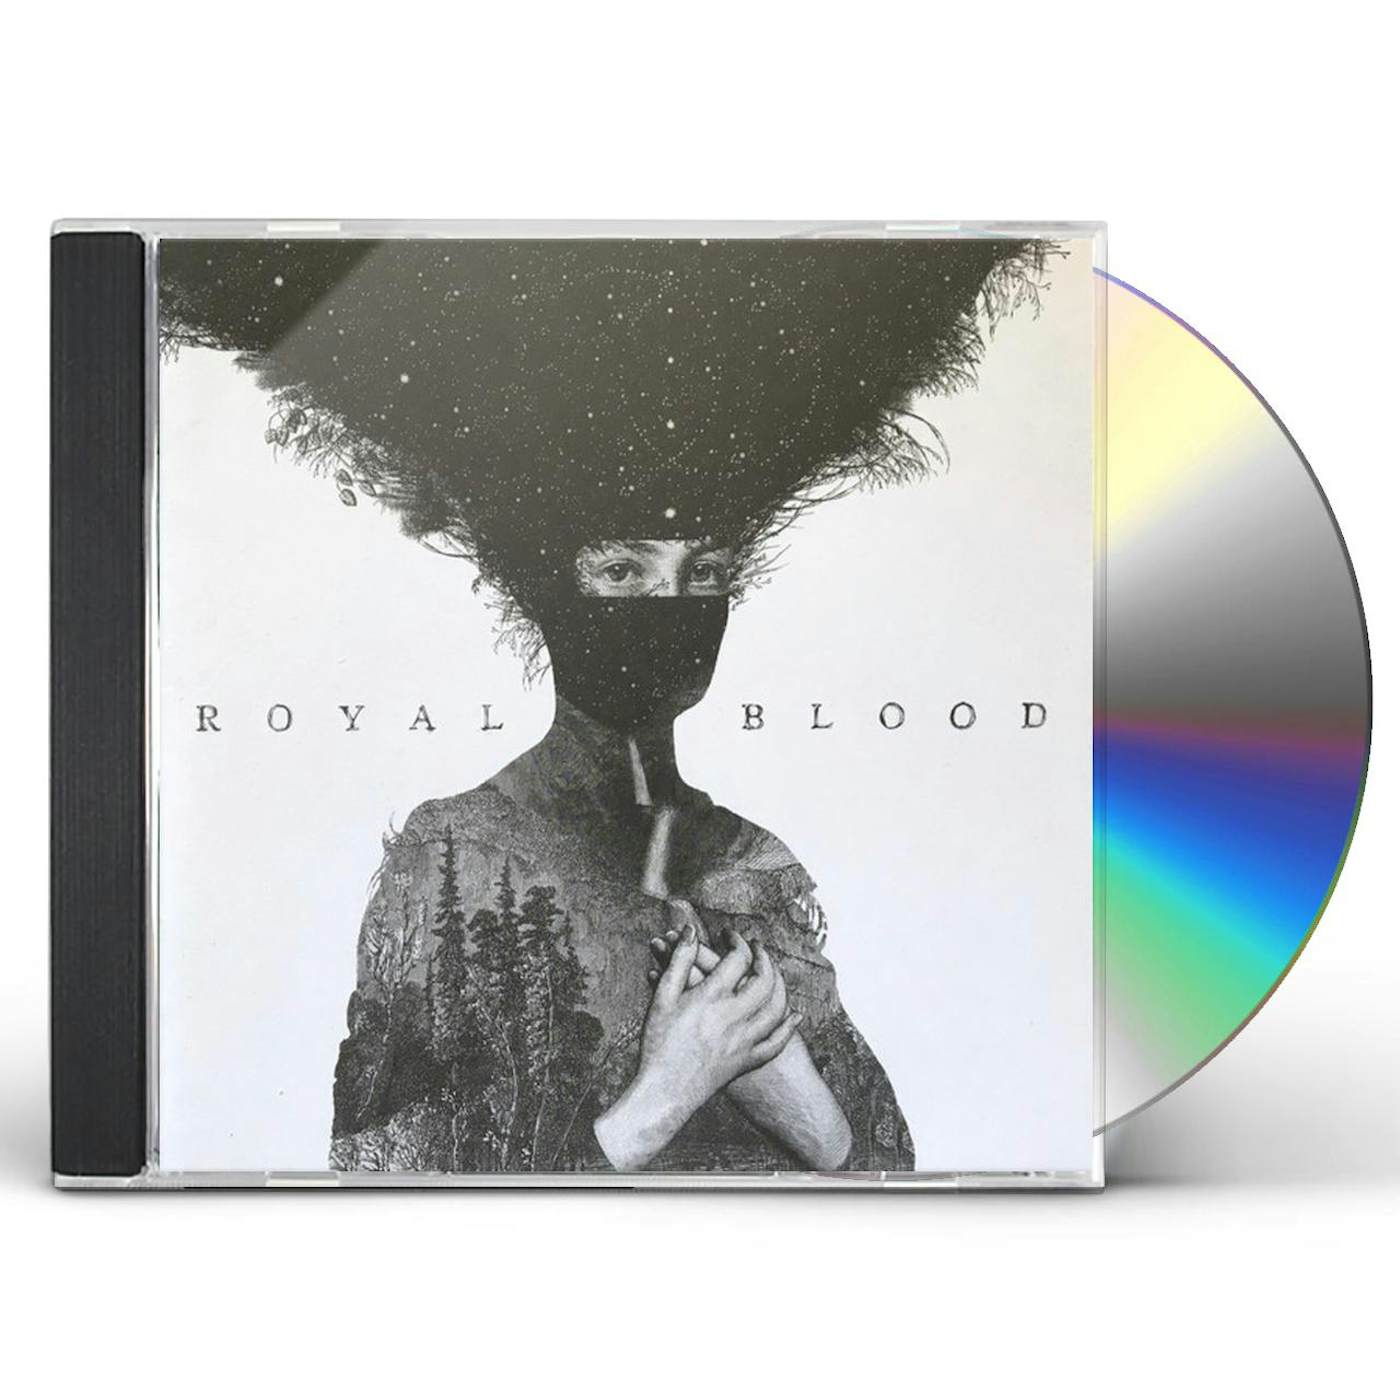 Royal CD